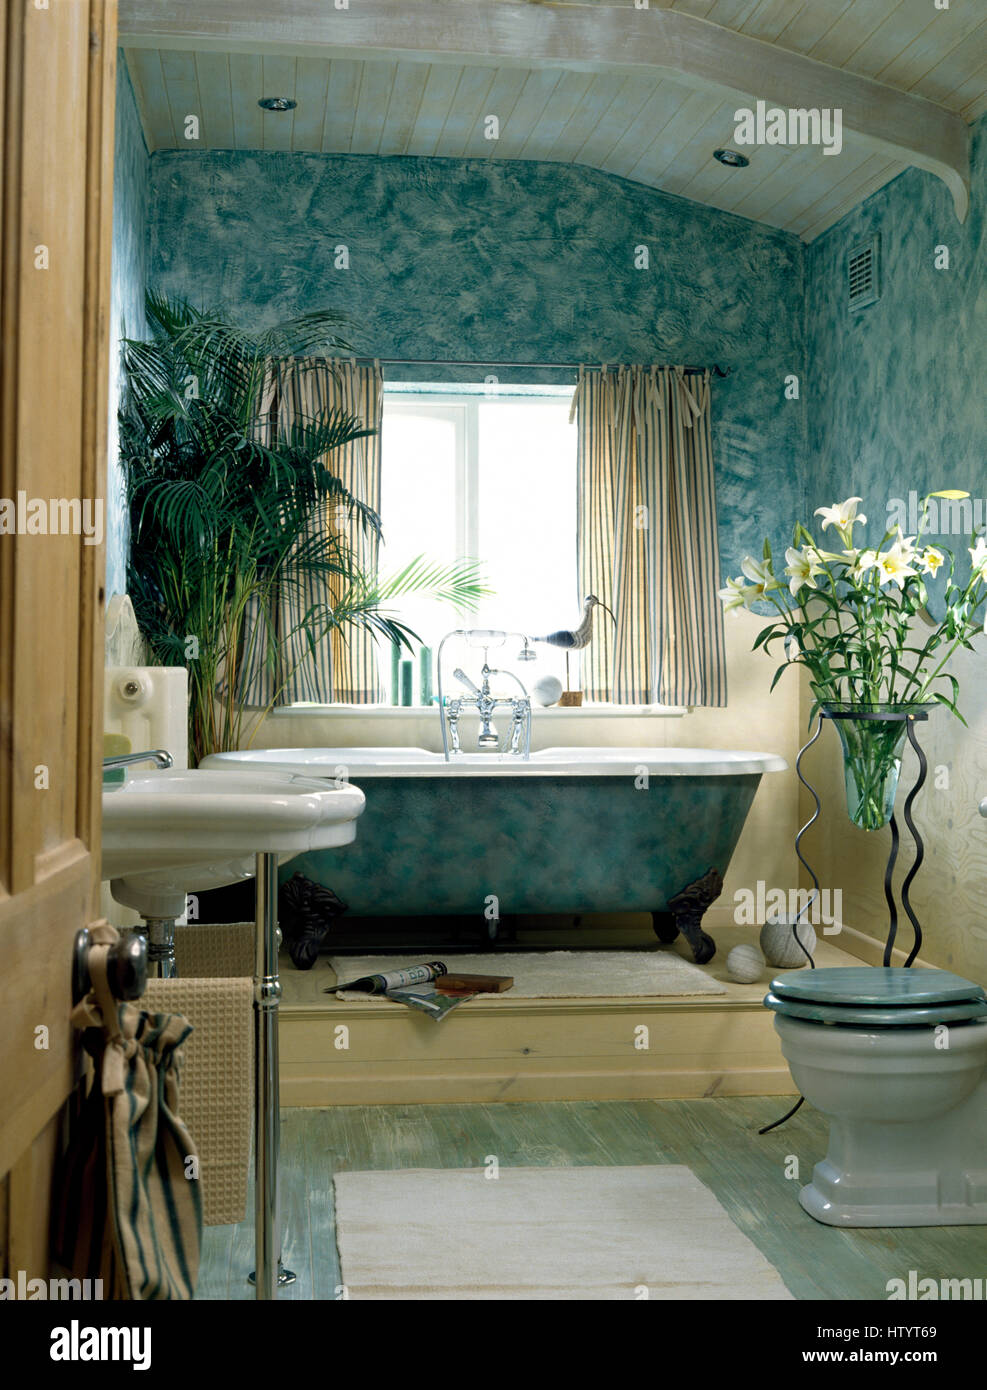 Roll top bagno su una piattaforma bassa in un bagno con decorativamente pareti dipinte Foto Stock